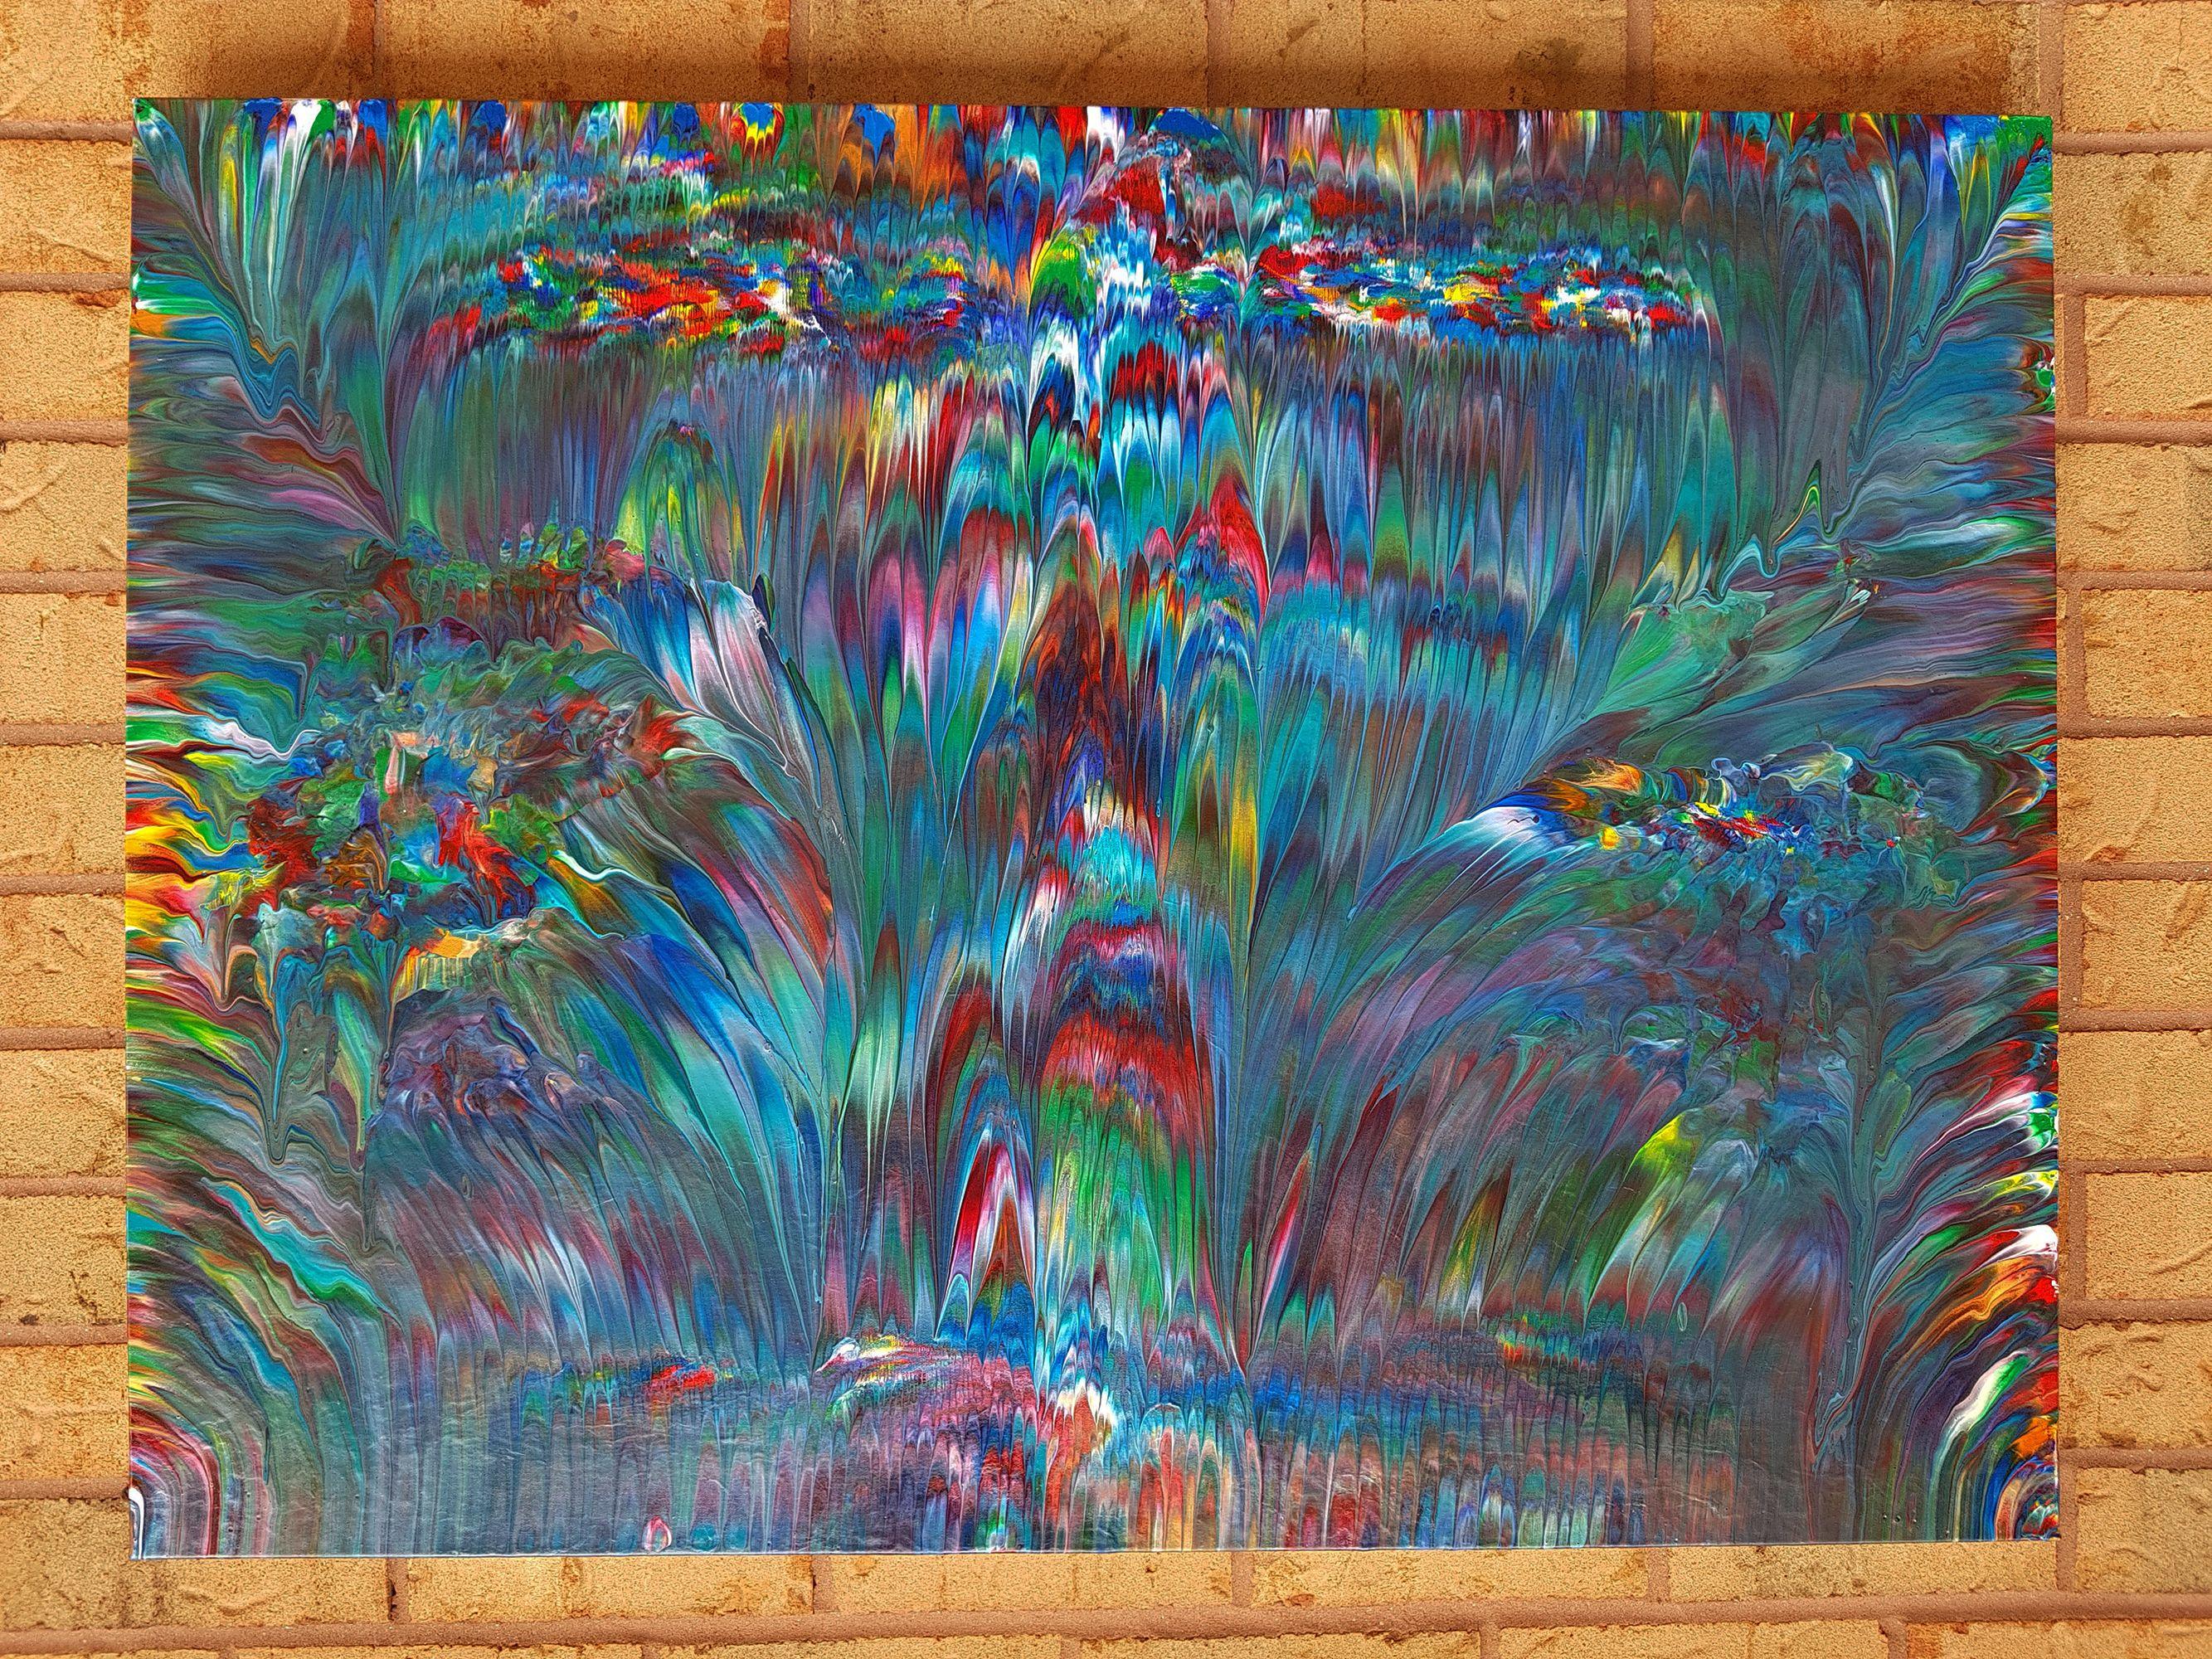 hypnotisches Meer, Gemälde, Acryl auf Leinwand (Abstrakter Expressionismus), Painting, von Alexandra Romano